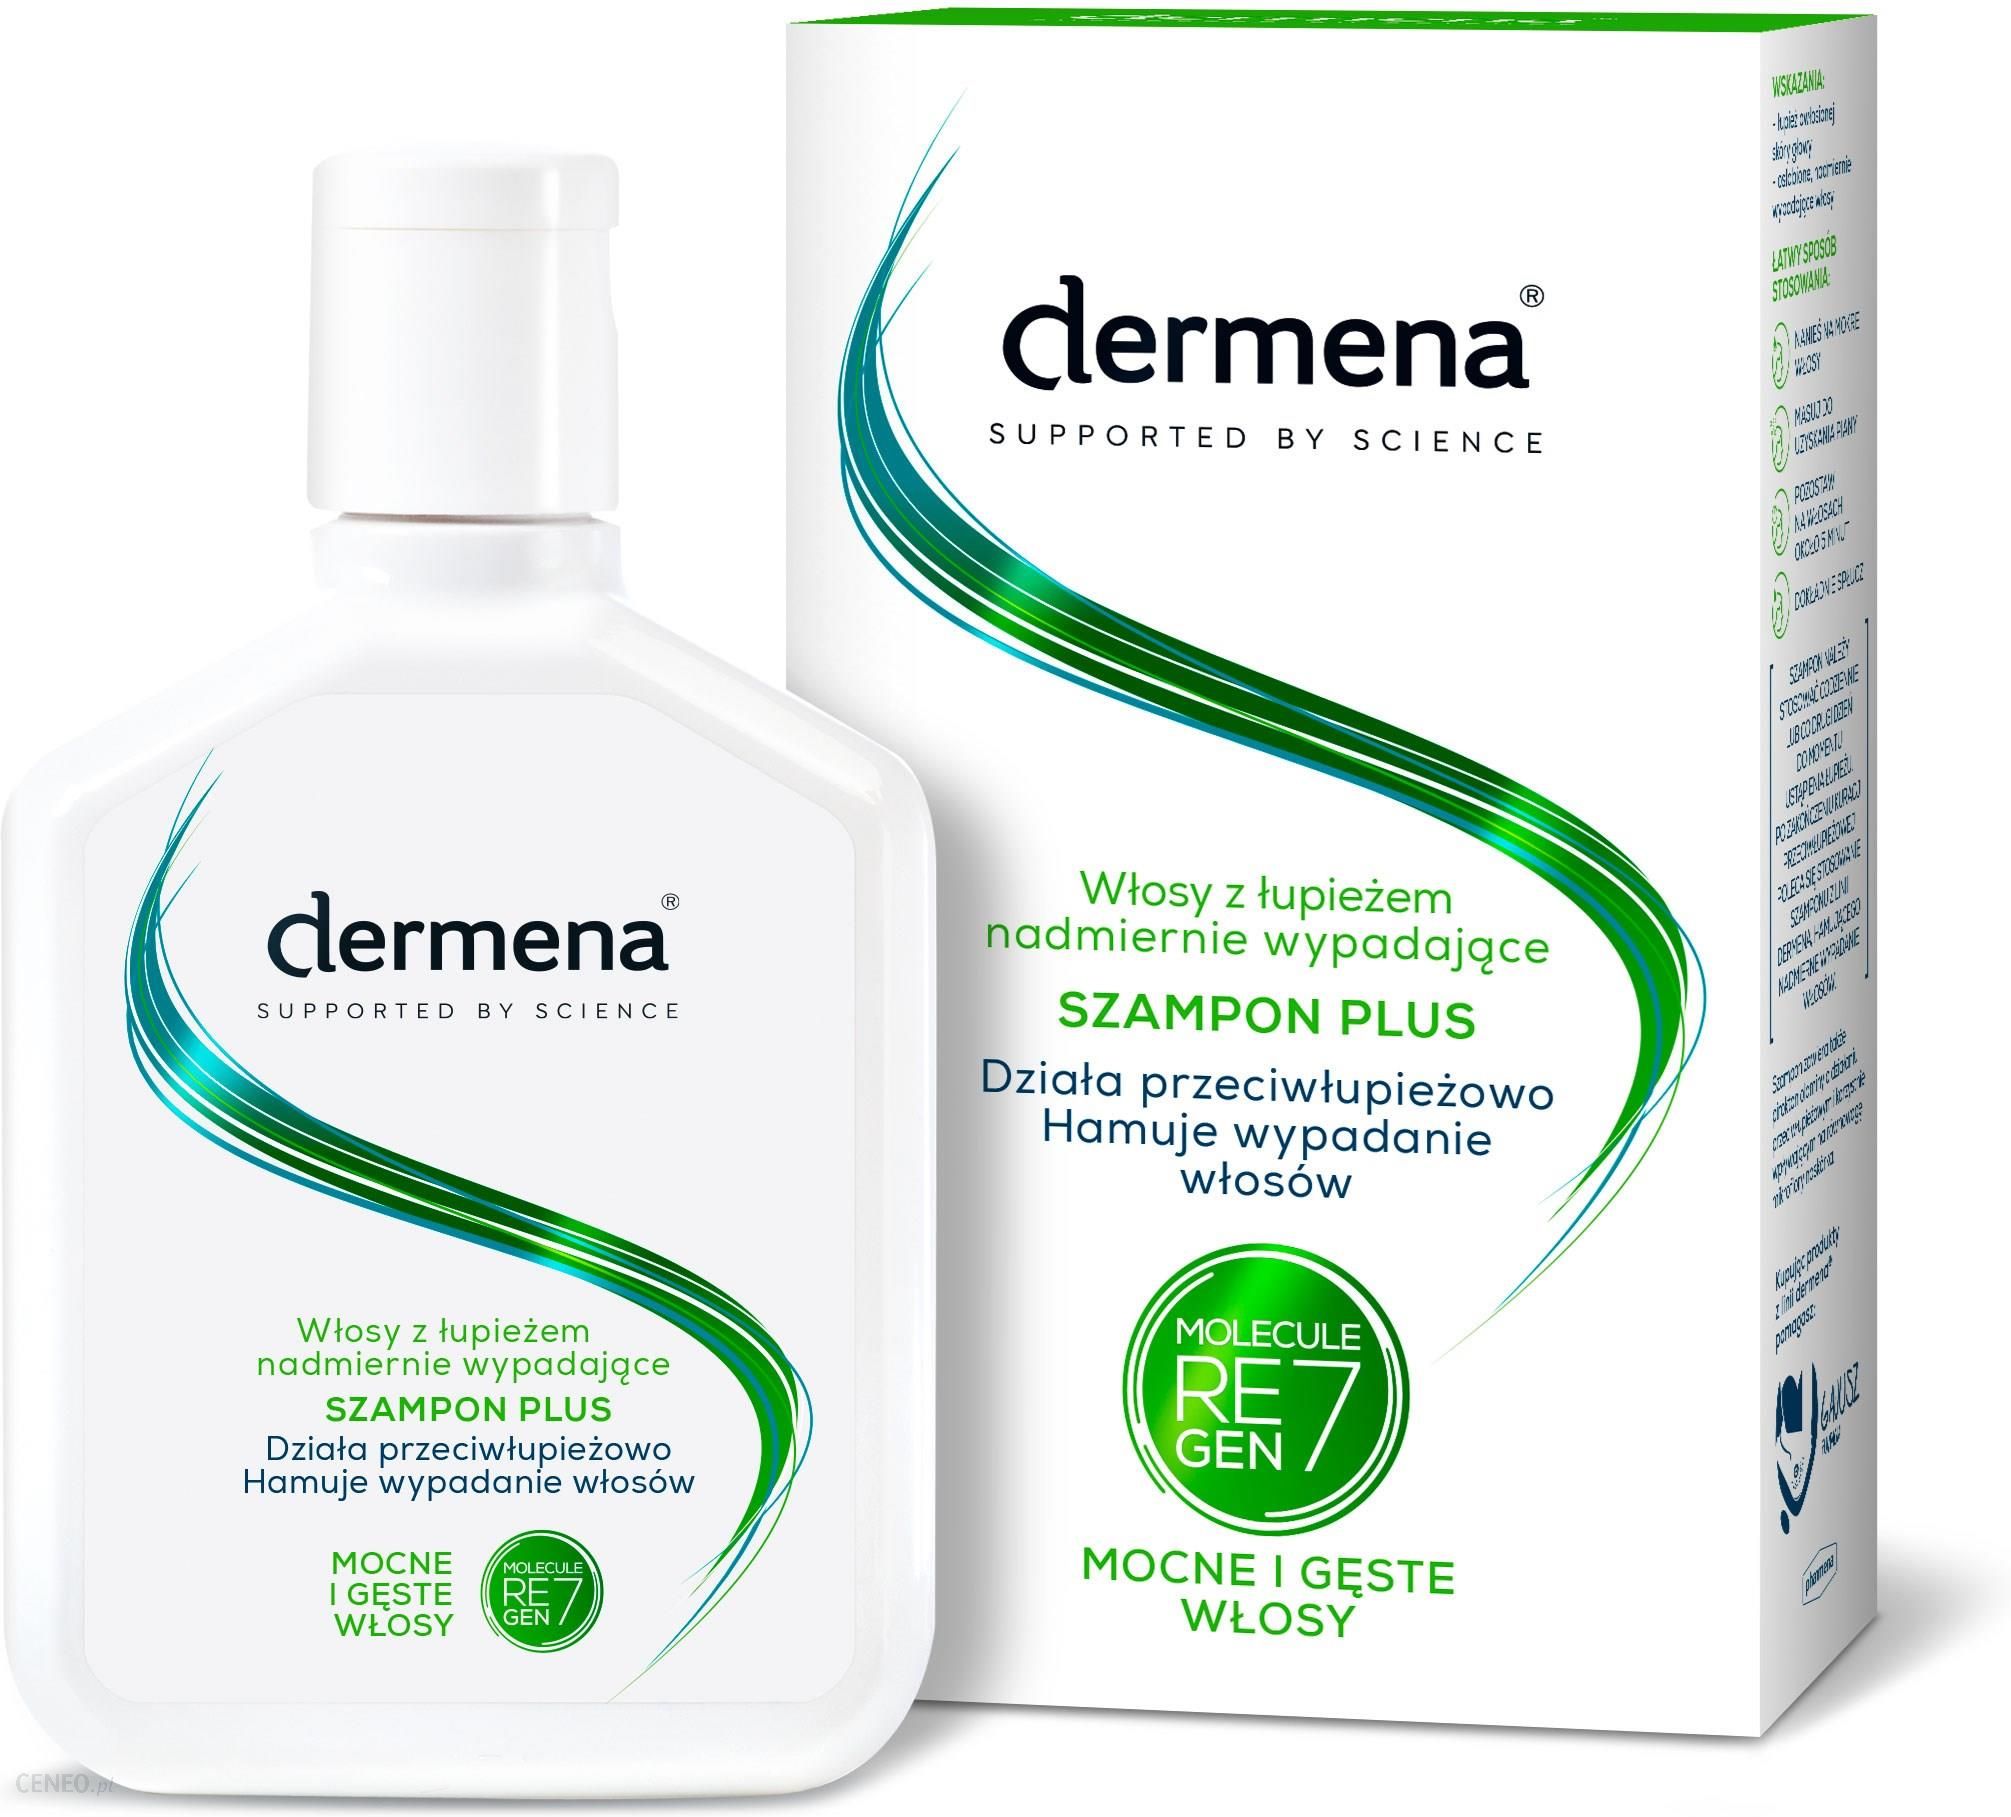 dermena plus szampon ceneo